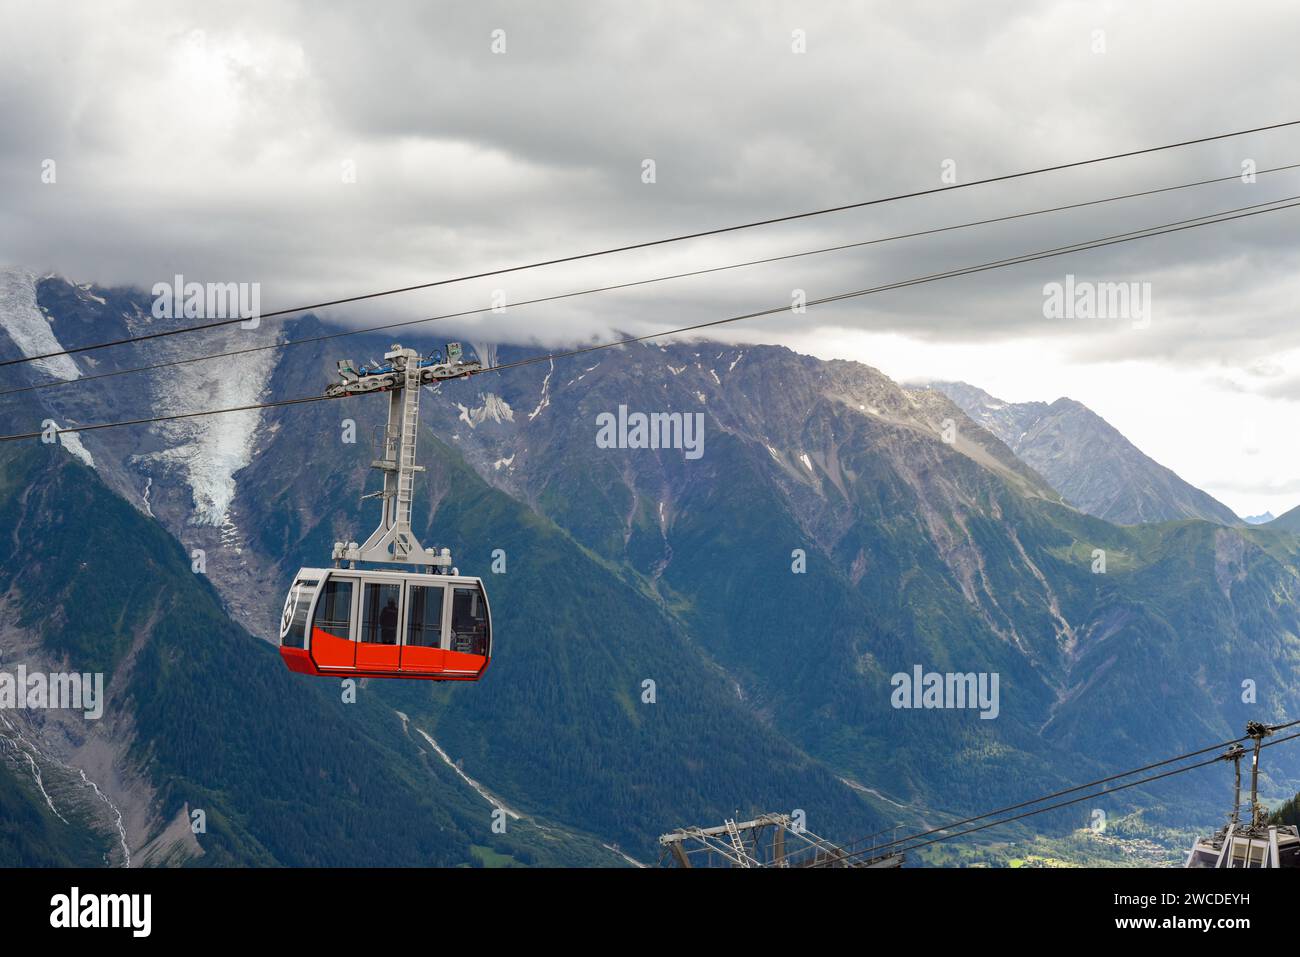 Une personne monte un téléphérique au-dessus des montagnes d'une station de ski Banque D'Images